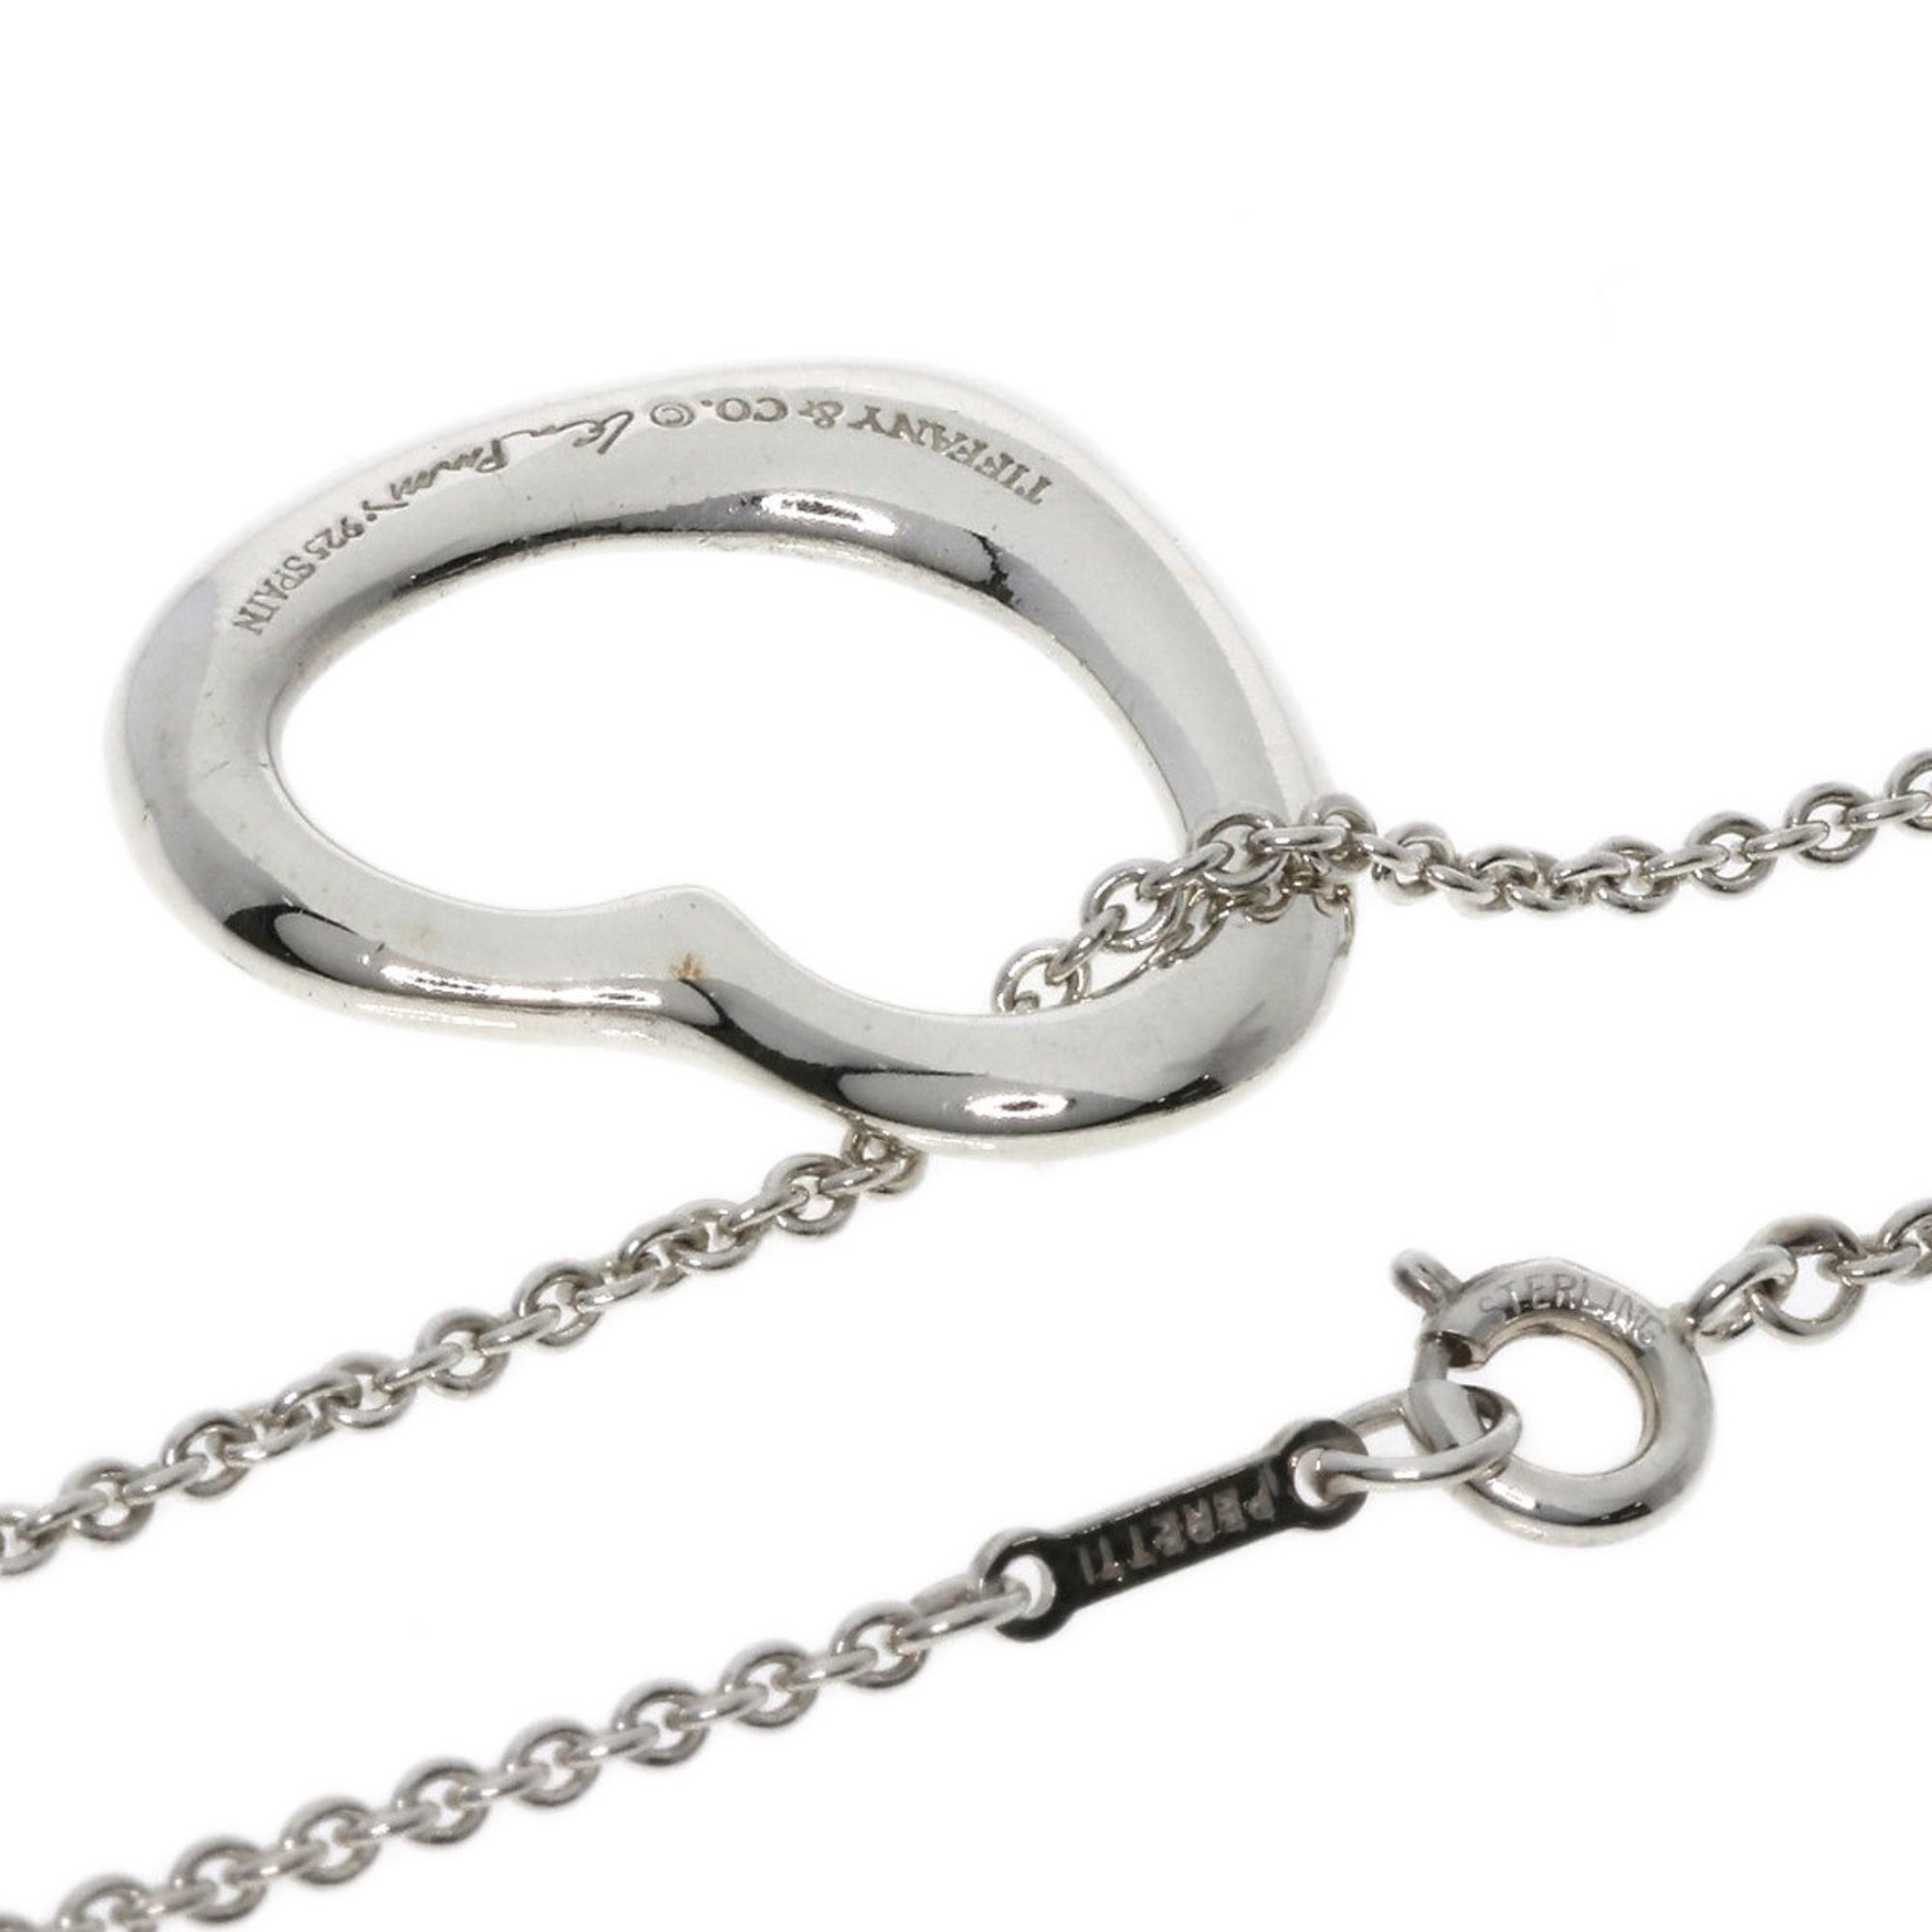 Tiffany Heart 22mm Necklace Silver Women's